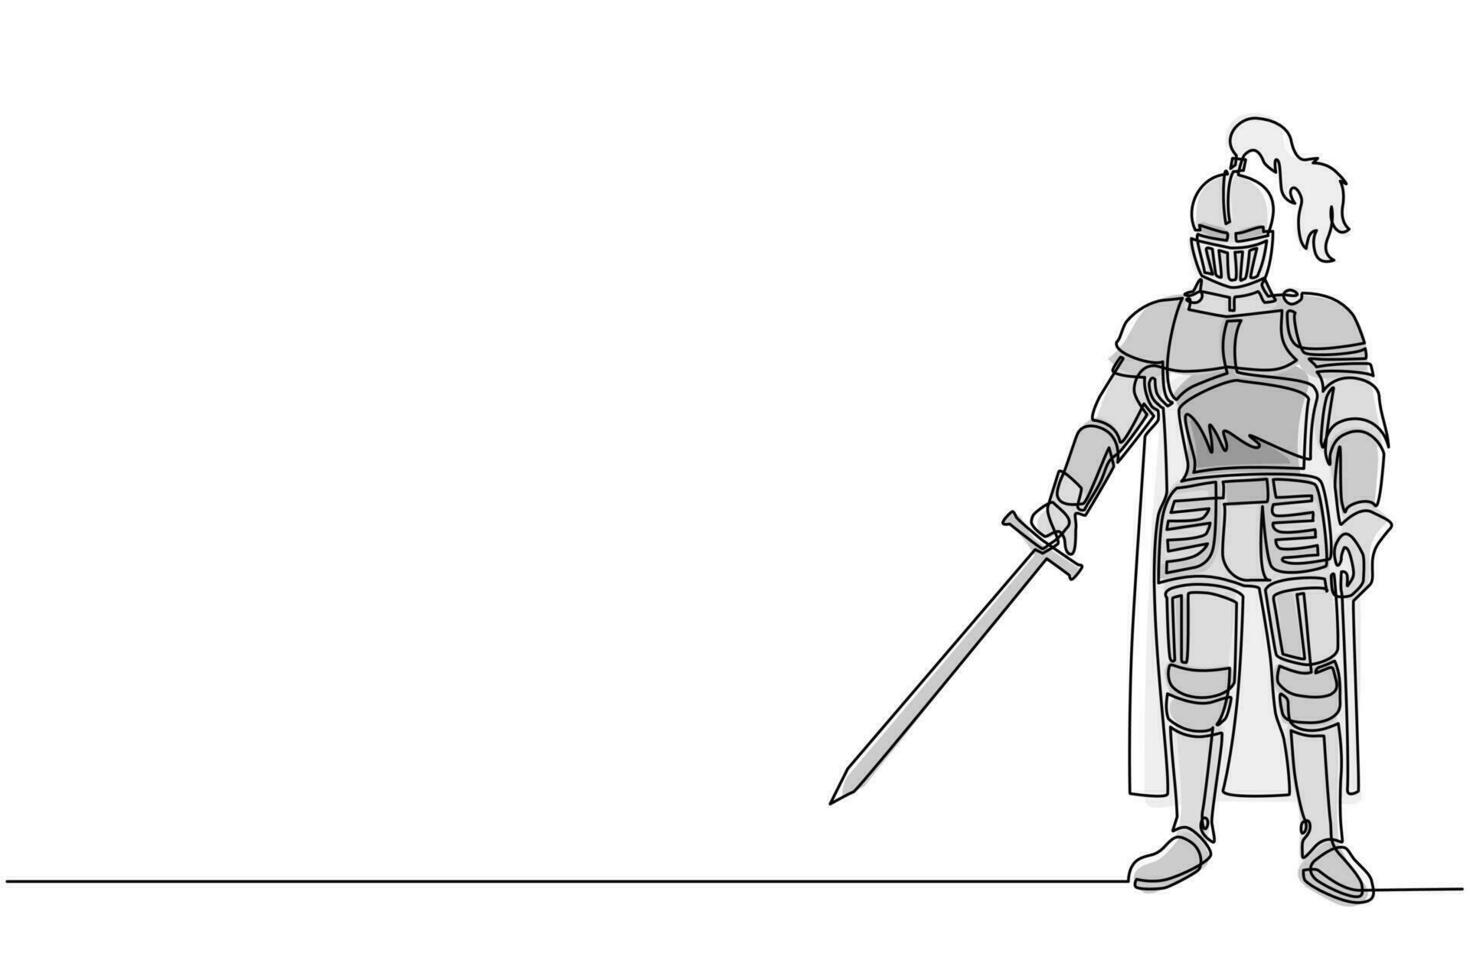 cavaliere medievale in armatura, mantello, elmo con piuma. guerriero del medioevo in piedi, con in mano la spada. simbolo araldico medievale. illustrazione vettoriale di disegno a linea continua